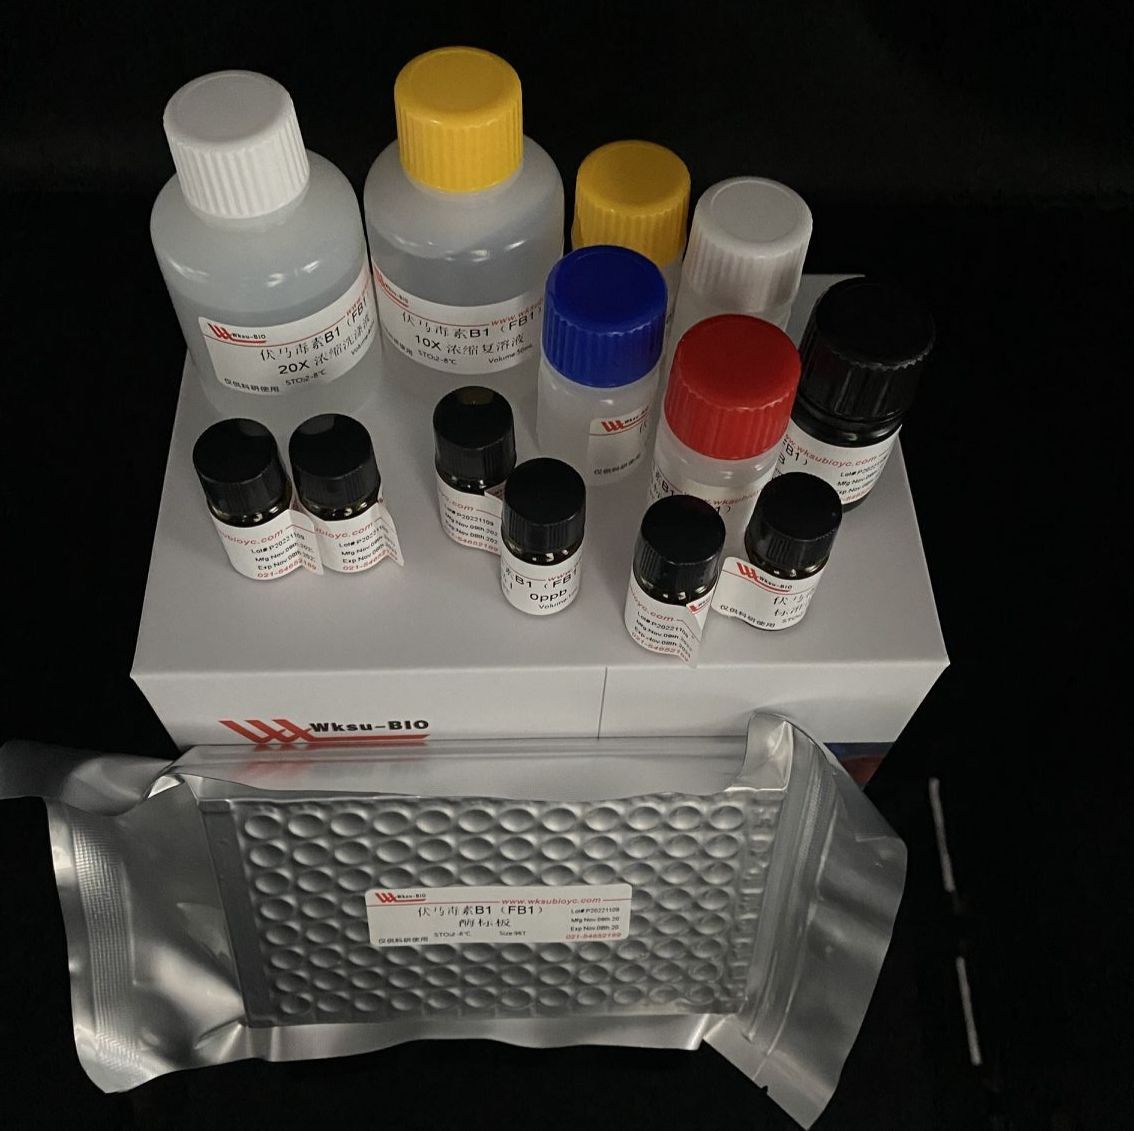 糖原磷酸化酶b(GPb)试剂盒,微板法